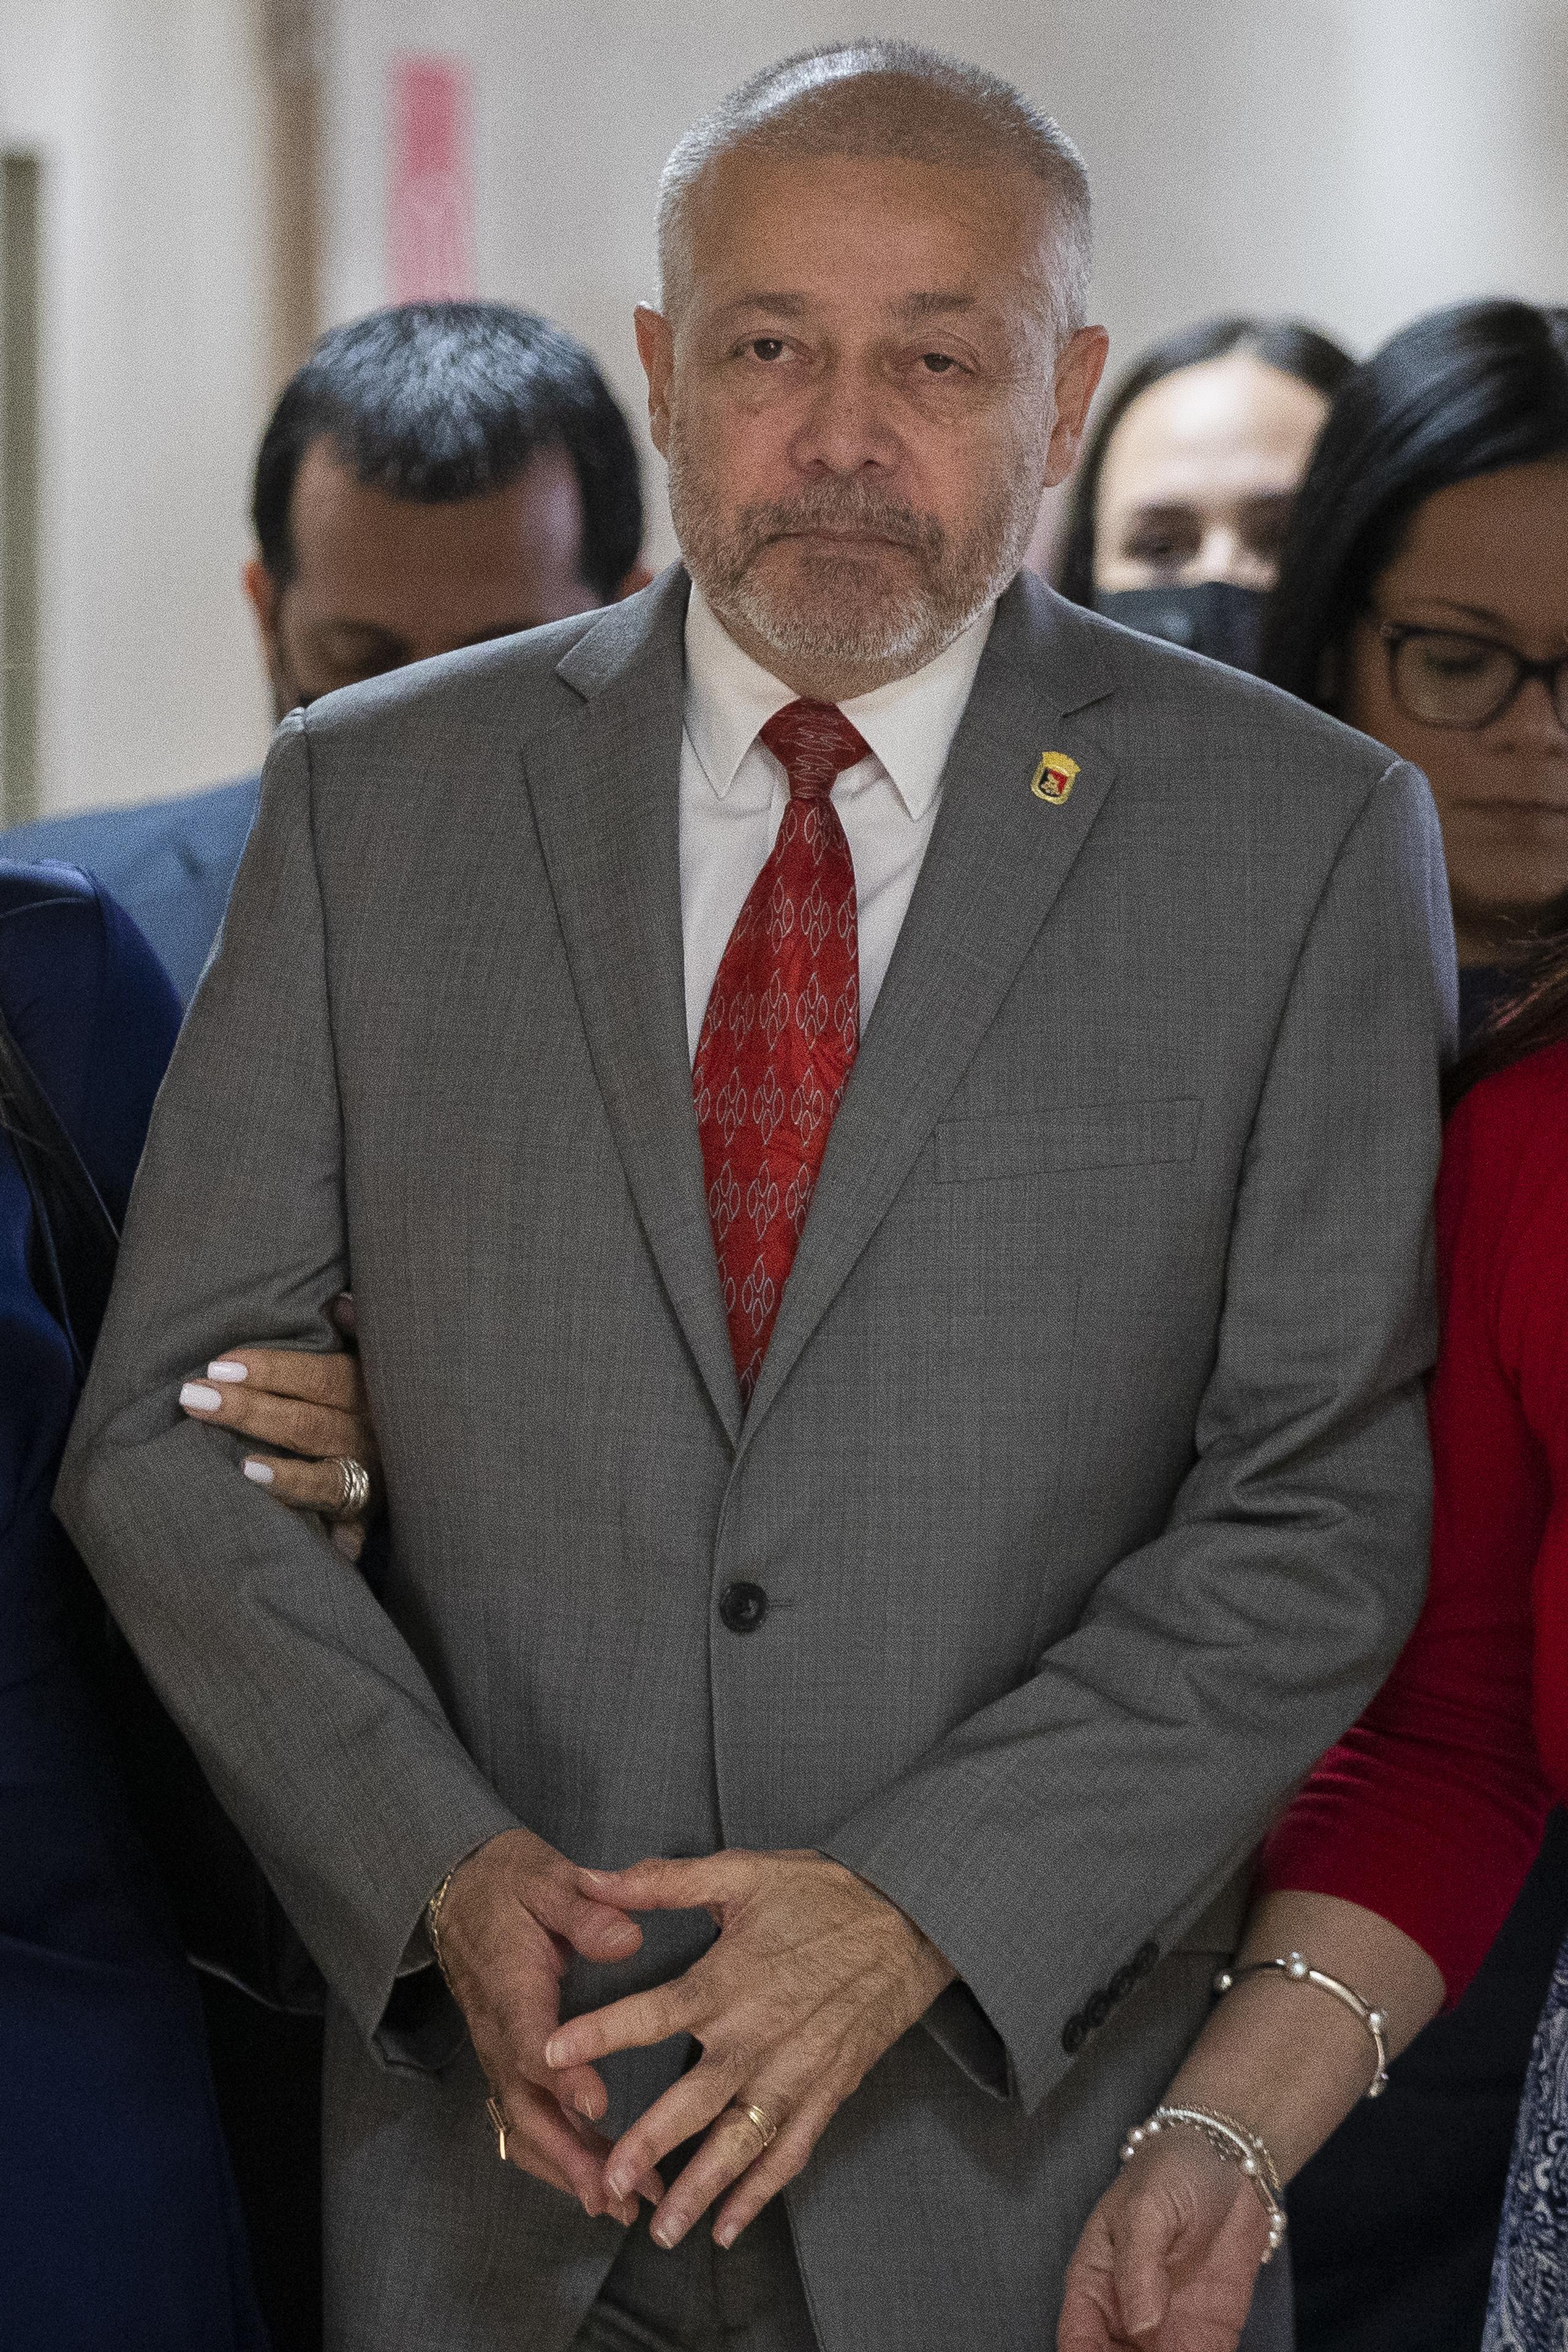 El suspendido alcalde de Ponce, Luis Manuel Irizarry Pabón, quien enfrenta cargos por violación a la Ética Gubernamental y enriquecimiento injustificado.